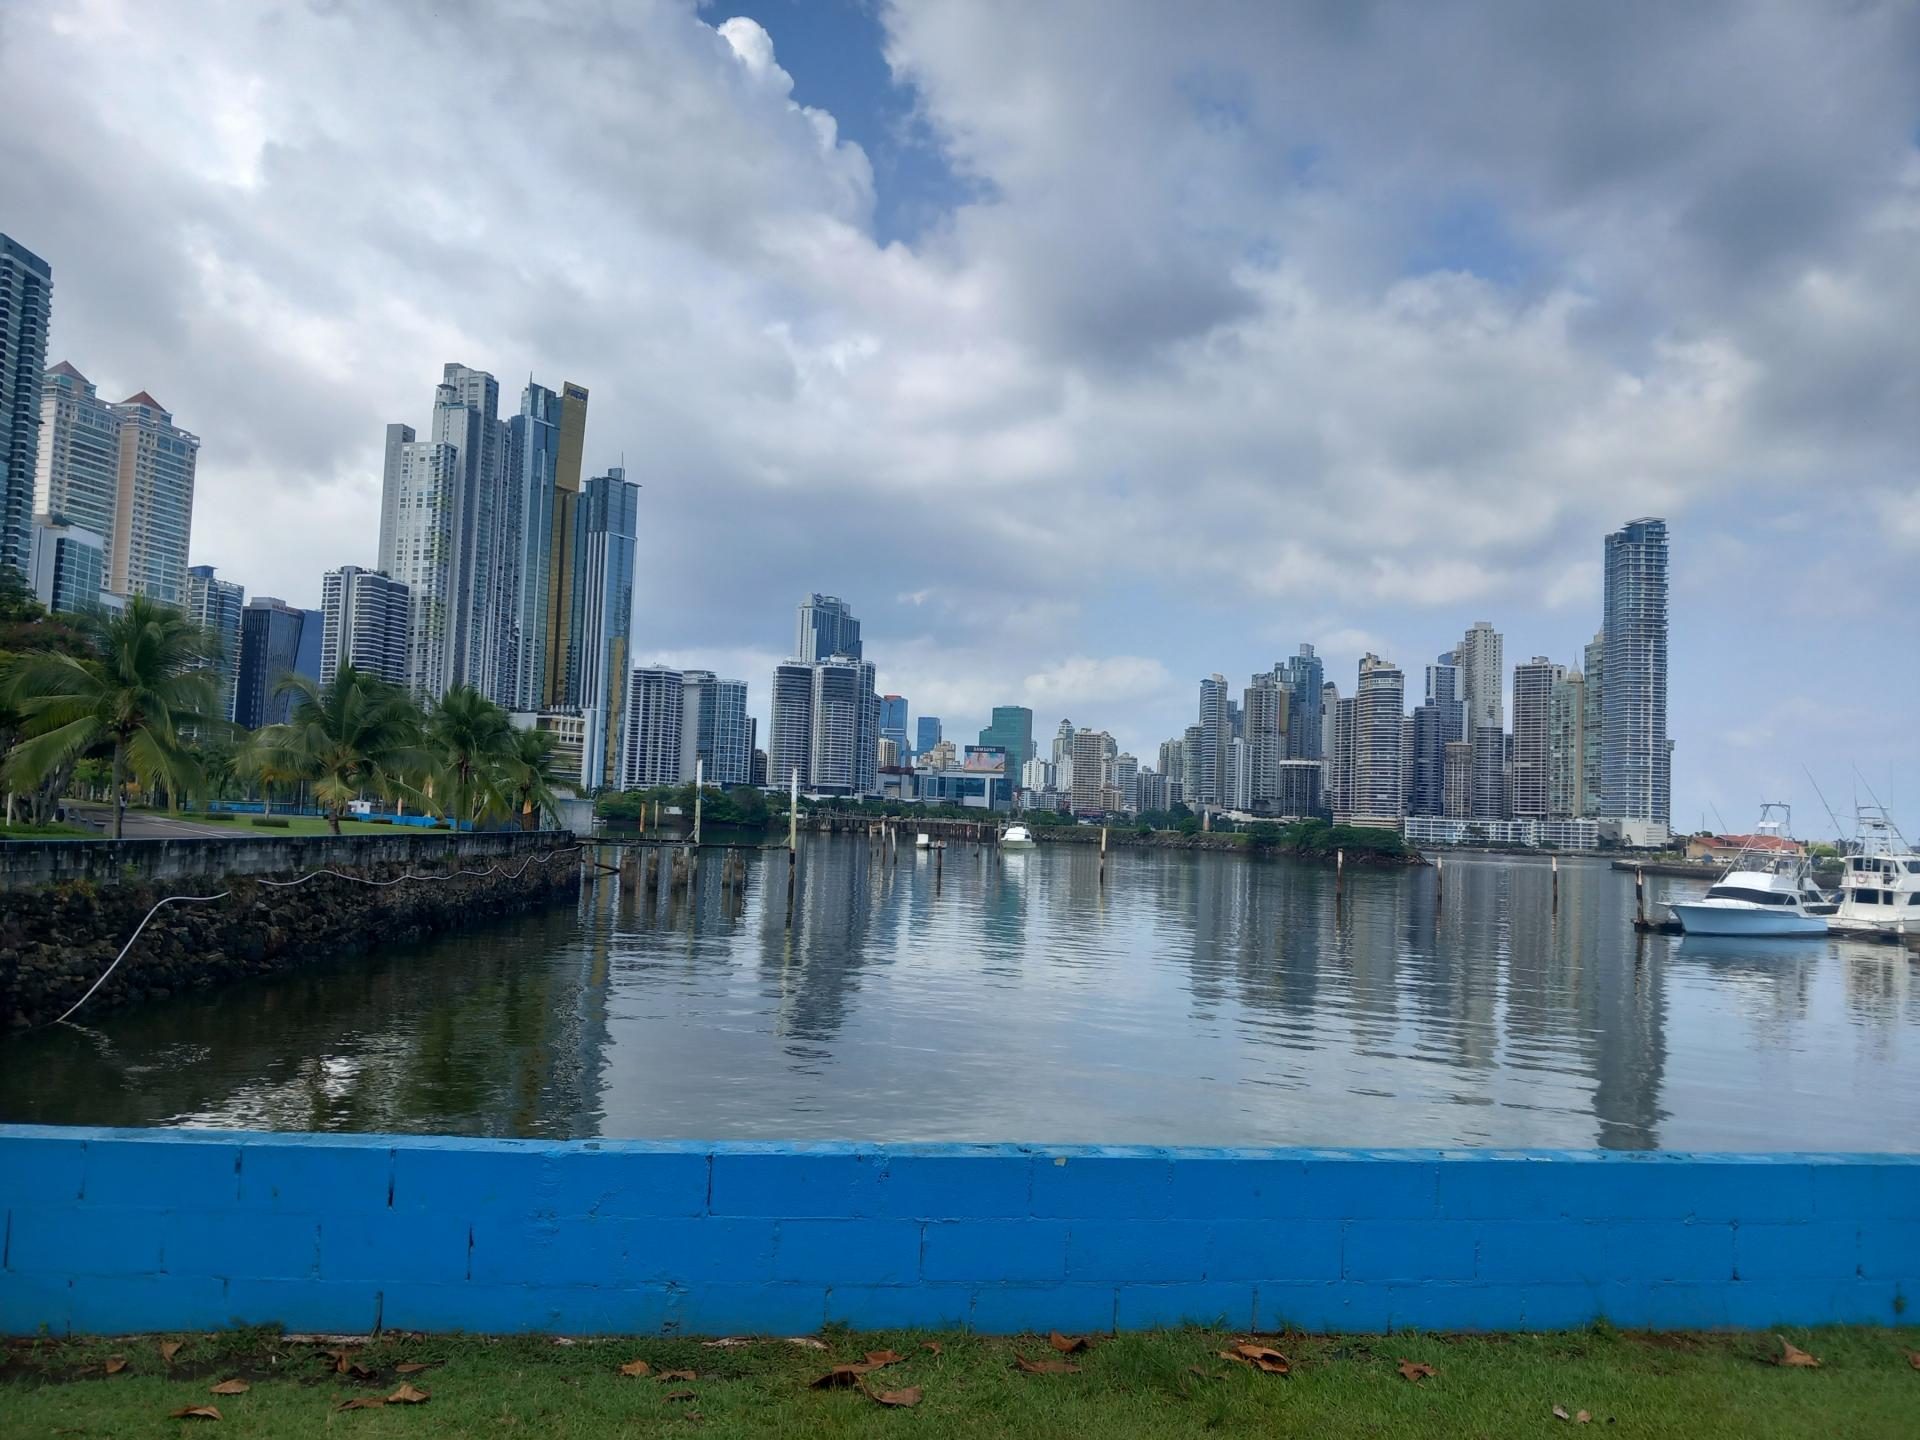 REPORTÉR HN NA CESTÁCH: Most medzi Atlantikom a Pacifikom. Panama je raj hazardných hráčov aj dôchodcov z USA